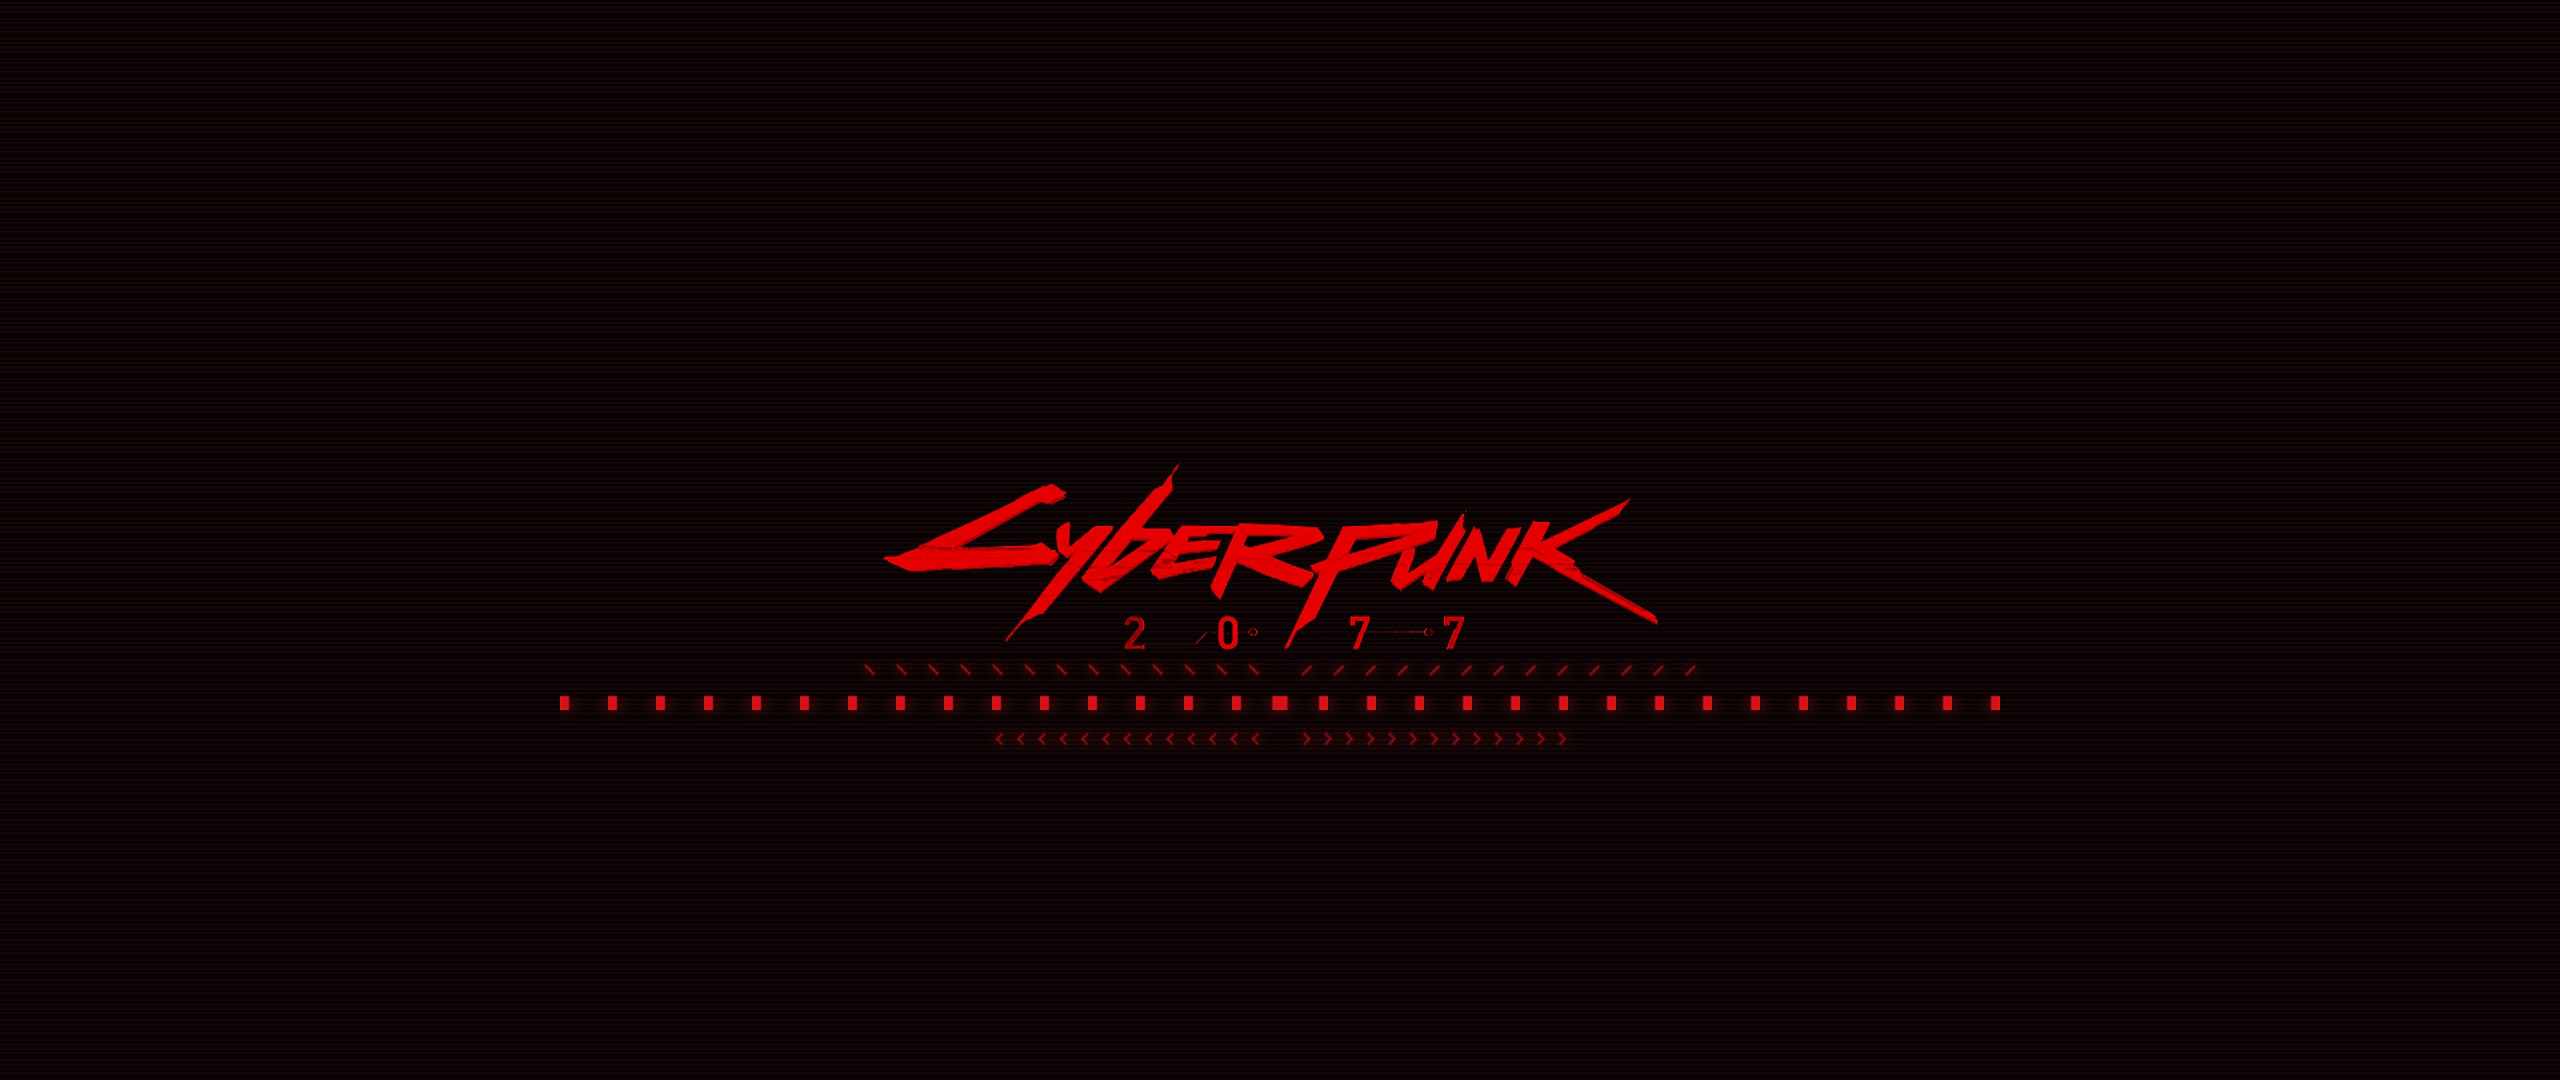 Cyberpunk gif logo фото 15